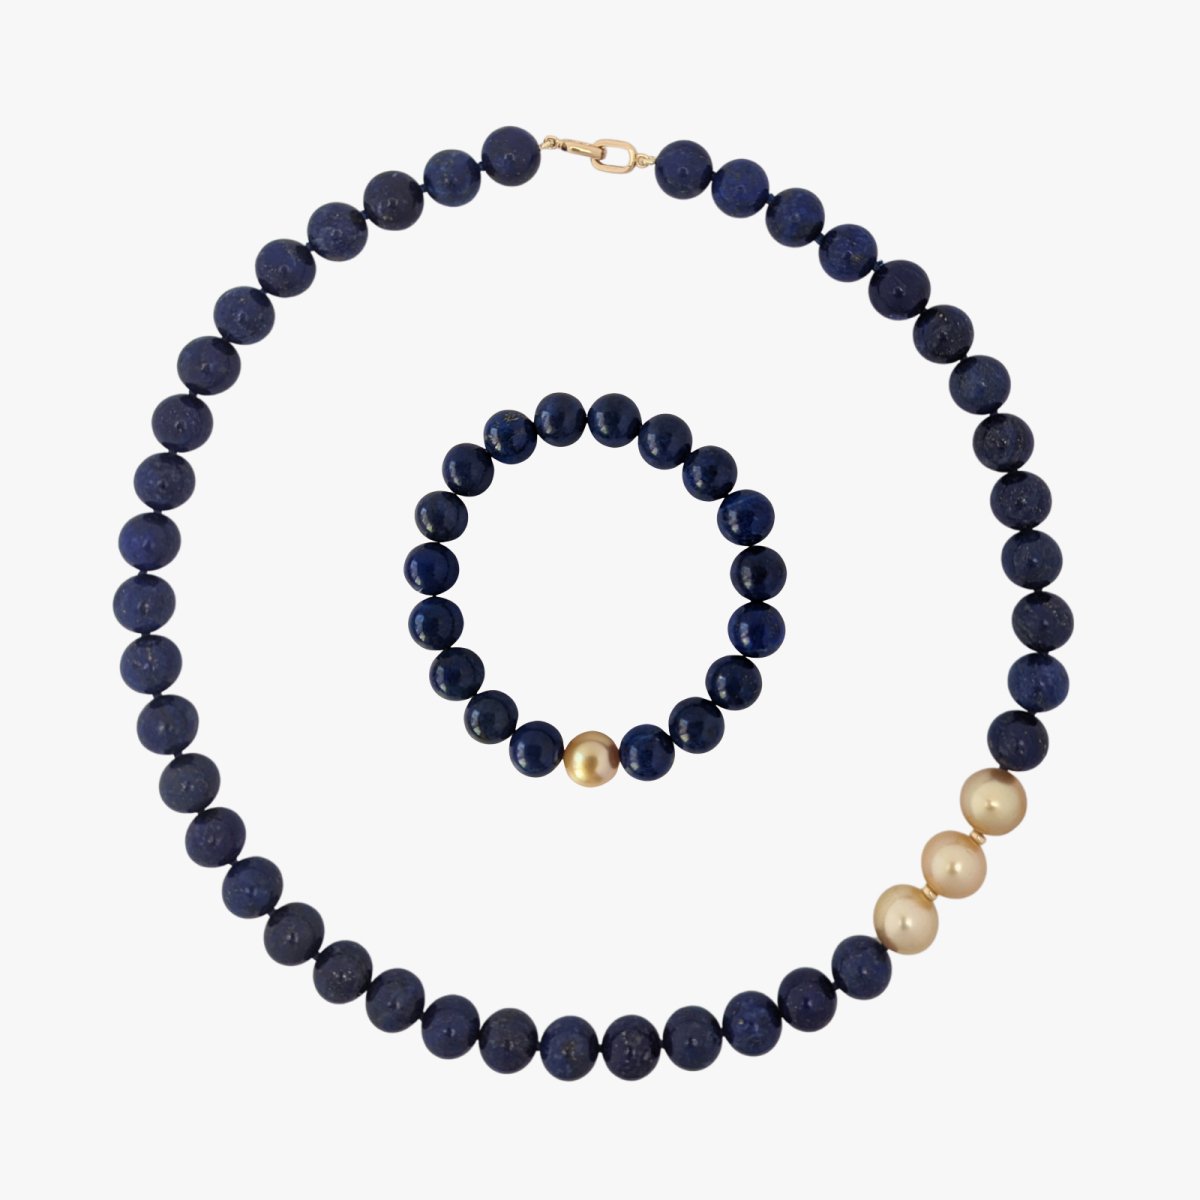 Long Navy Blue Chunky Statement Necklace, single strand necklace, blue –  Polka Dot Drawer